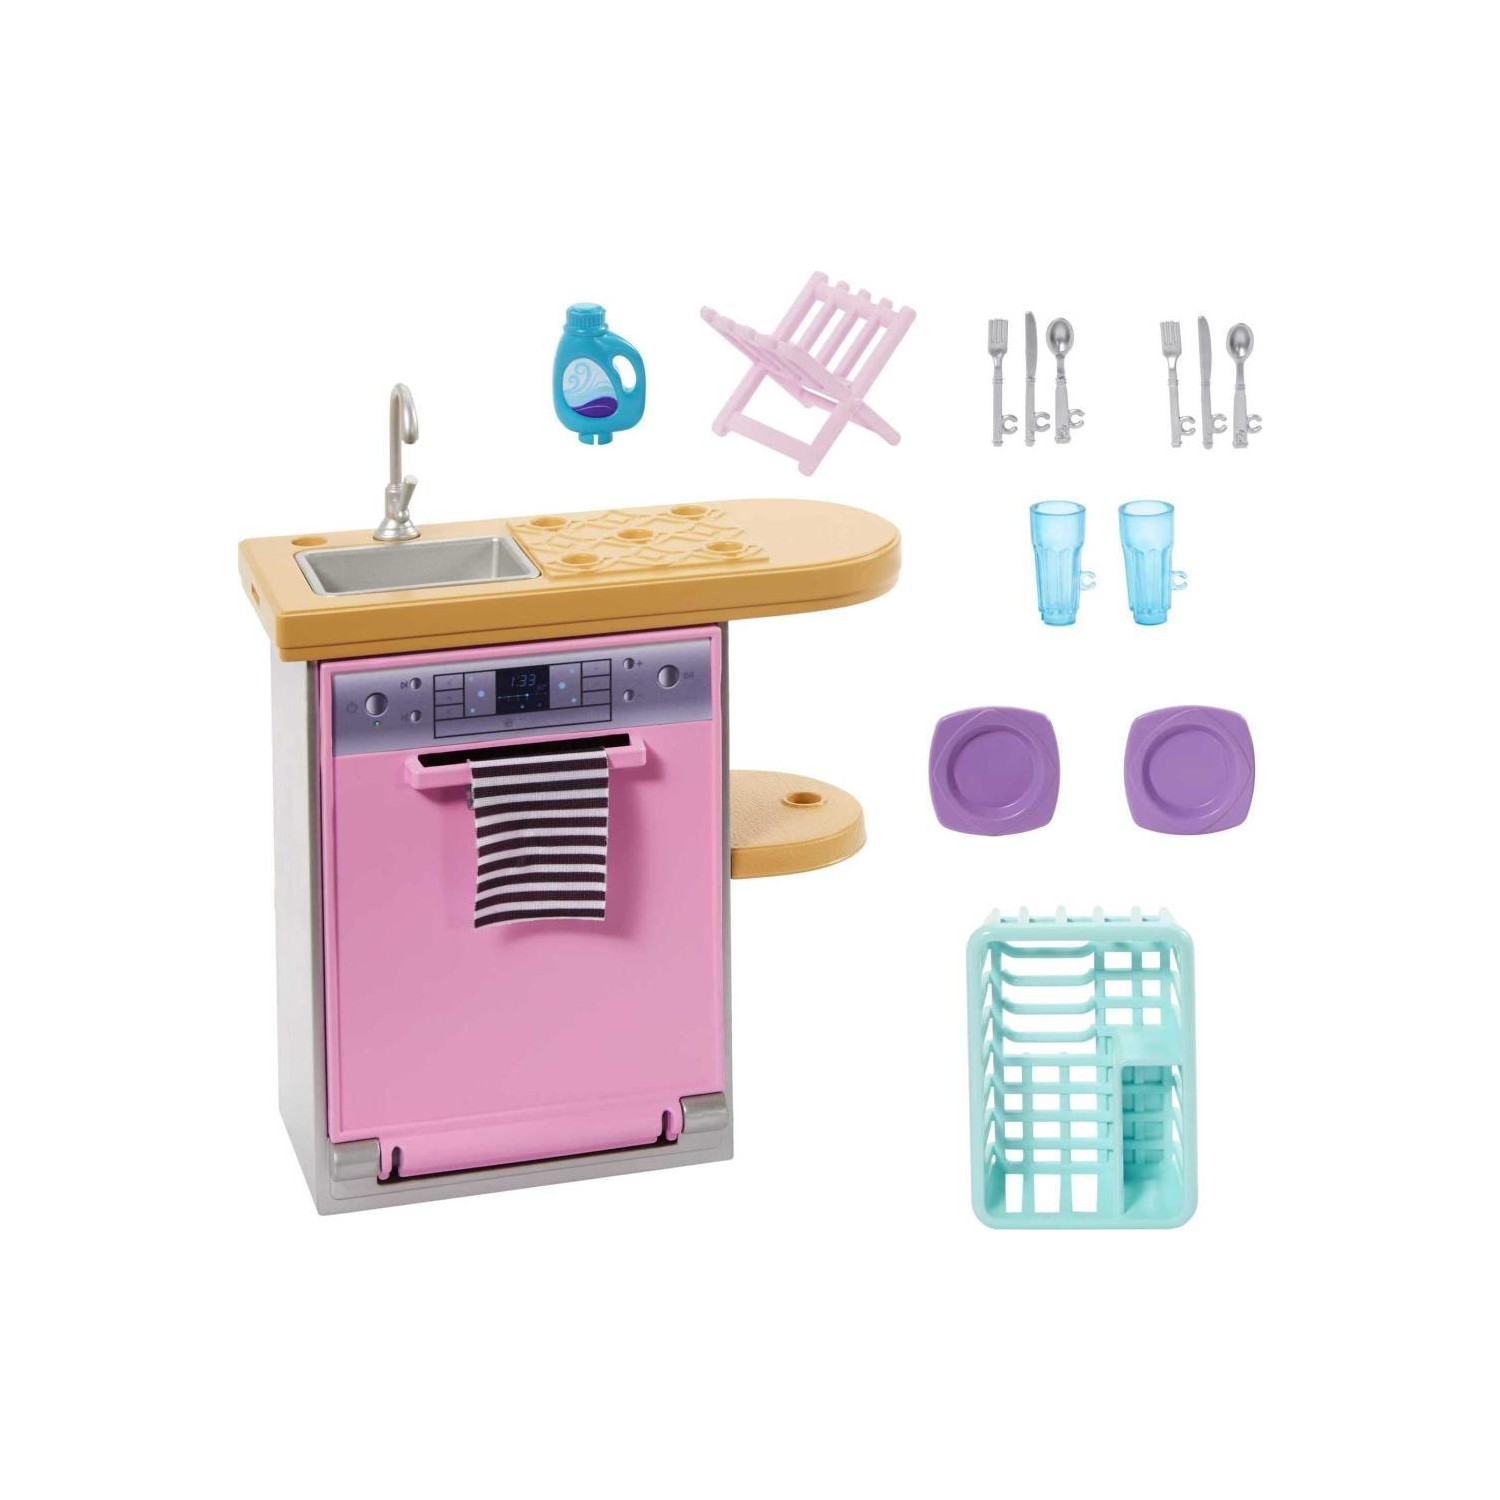 Игровой набор Barbie Home Decor посудомоечная машина и аксессуары HJV32 пазлы барби 160 элементов